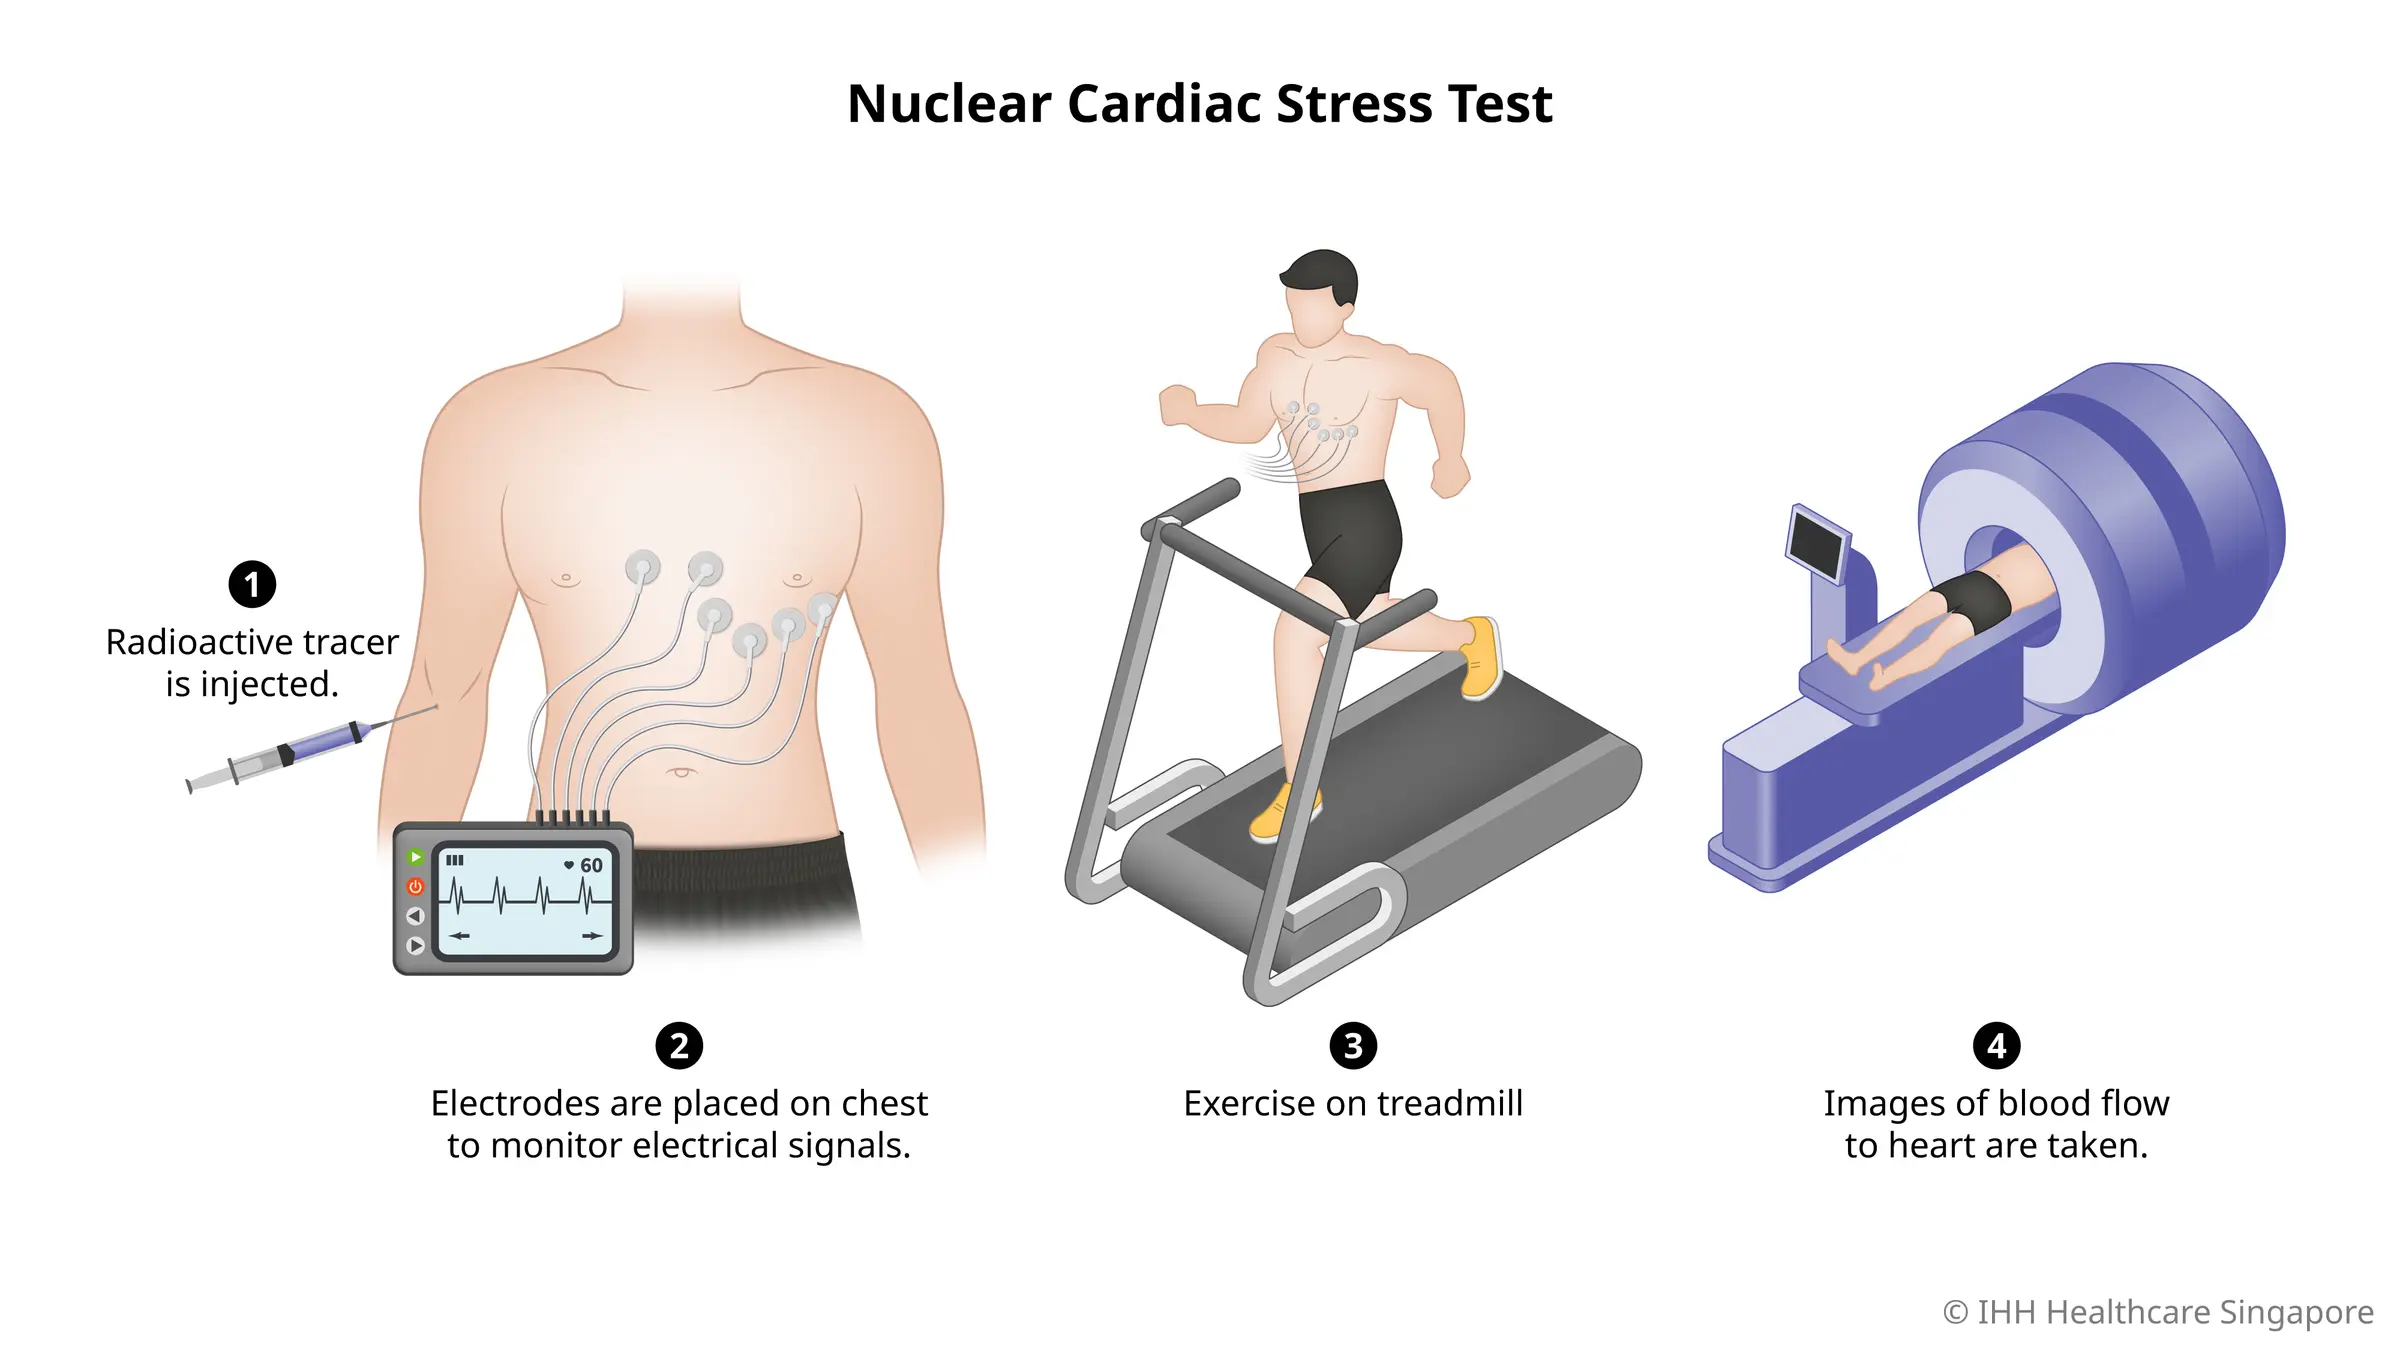 Tes stres nuklir menggunakan pelacak radioaktif untuk memeriksa aliran darah ke otot jantung selama olahraga dan istirahat.